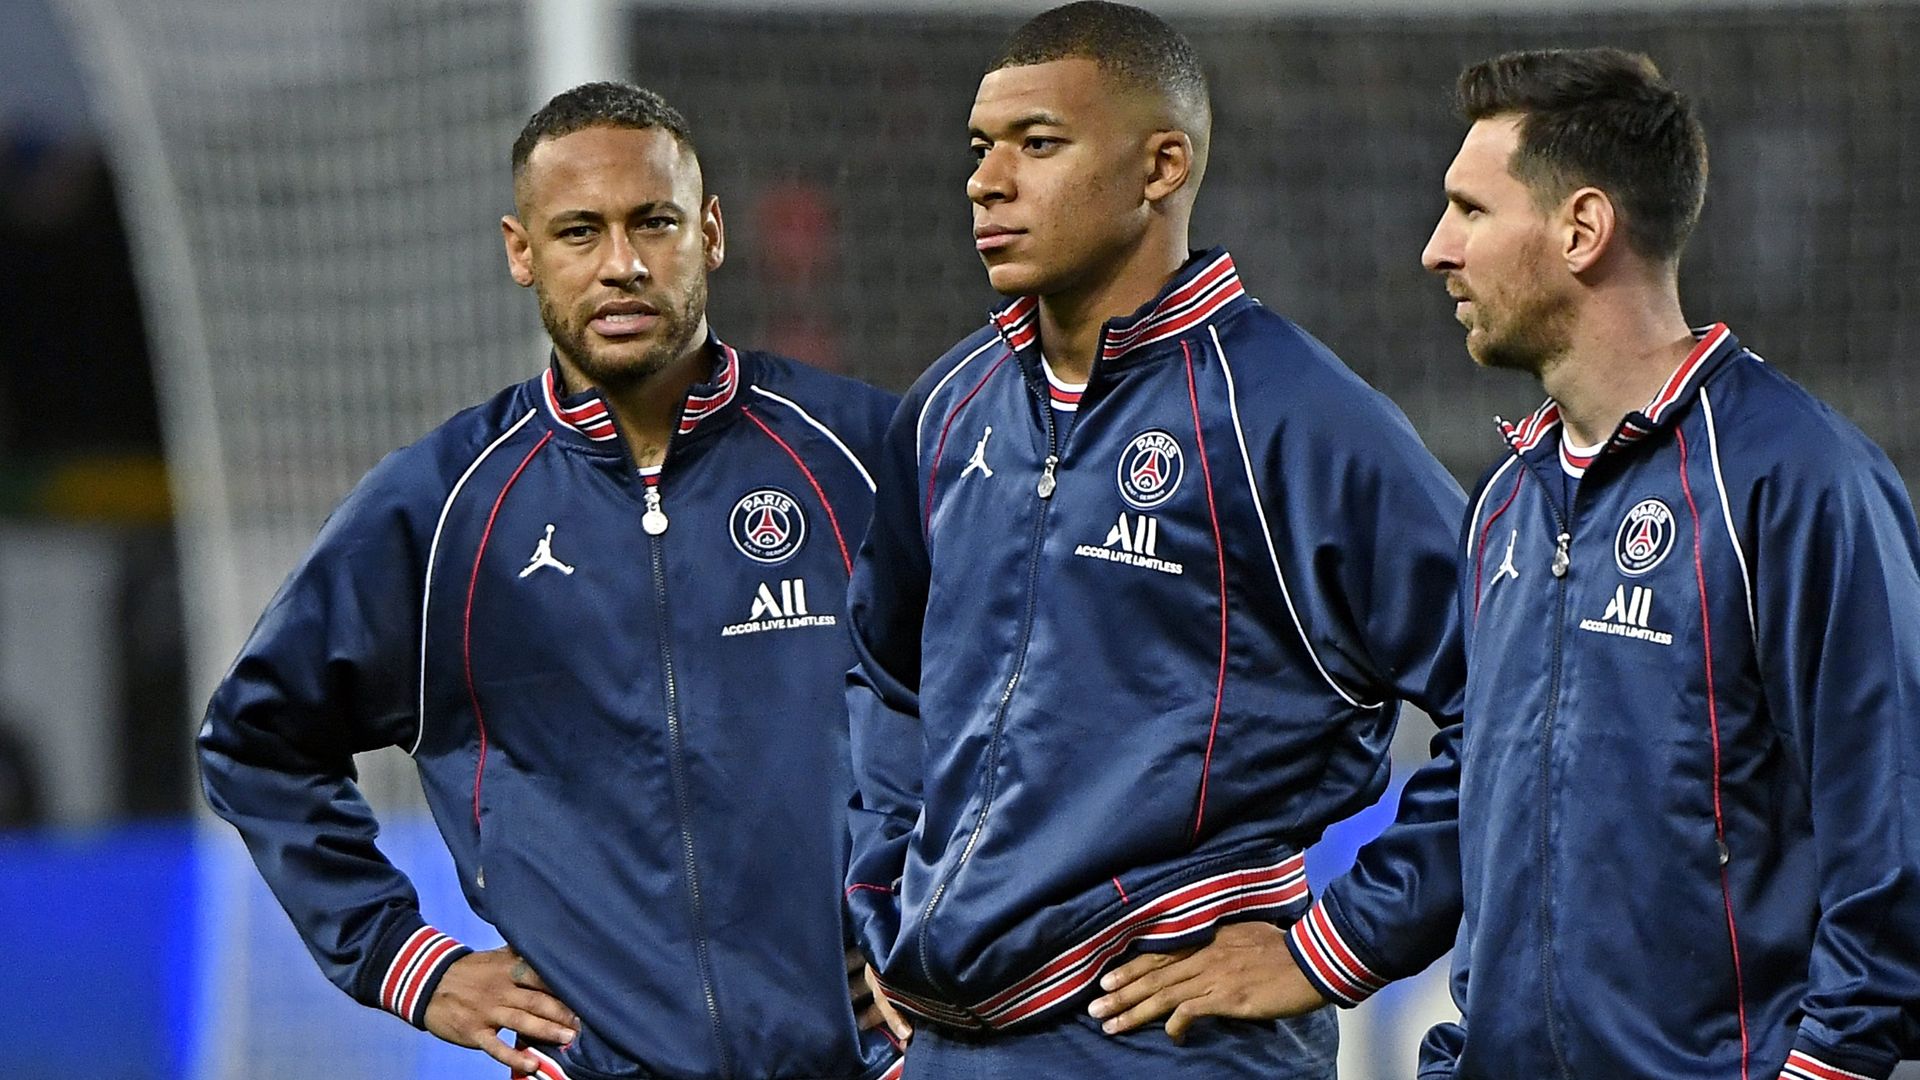 Les compos officielles de PSG-Troyes avec le trio MNM, Sergio Ramos remplaçant !